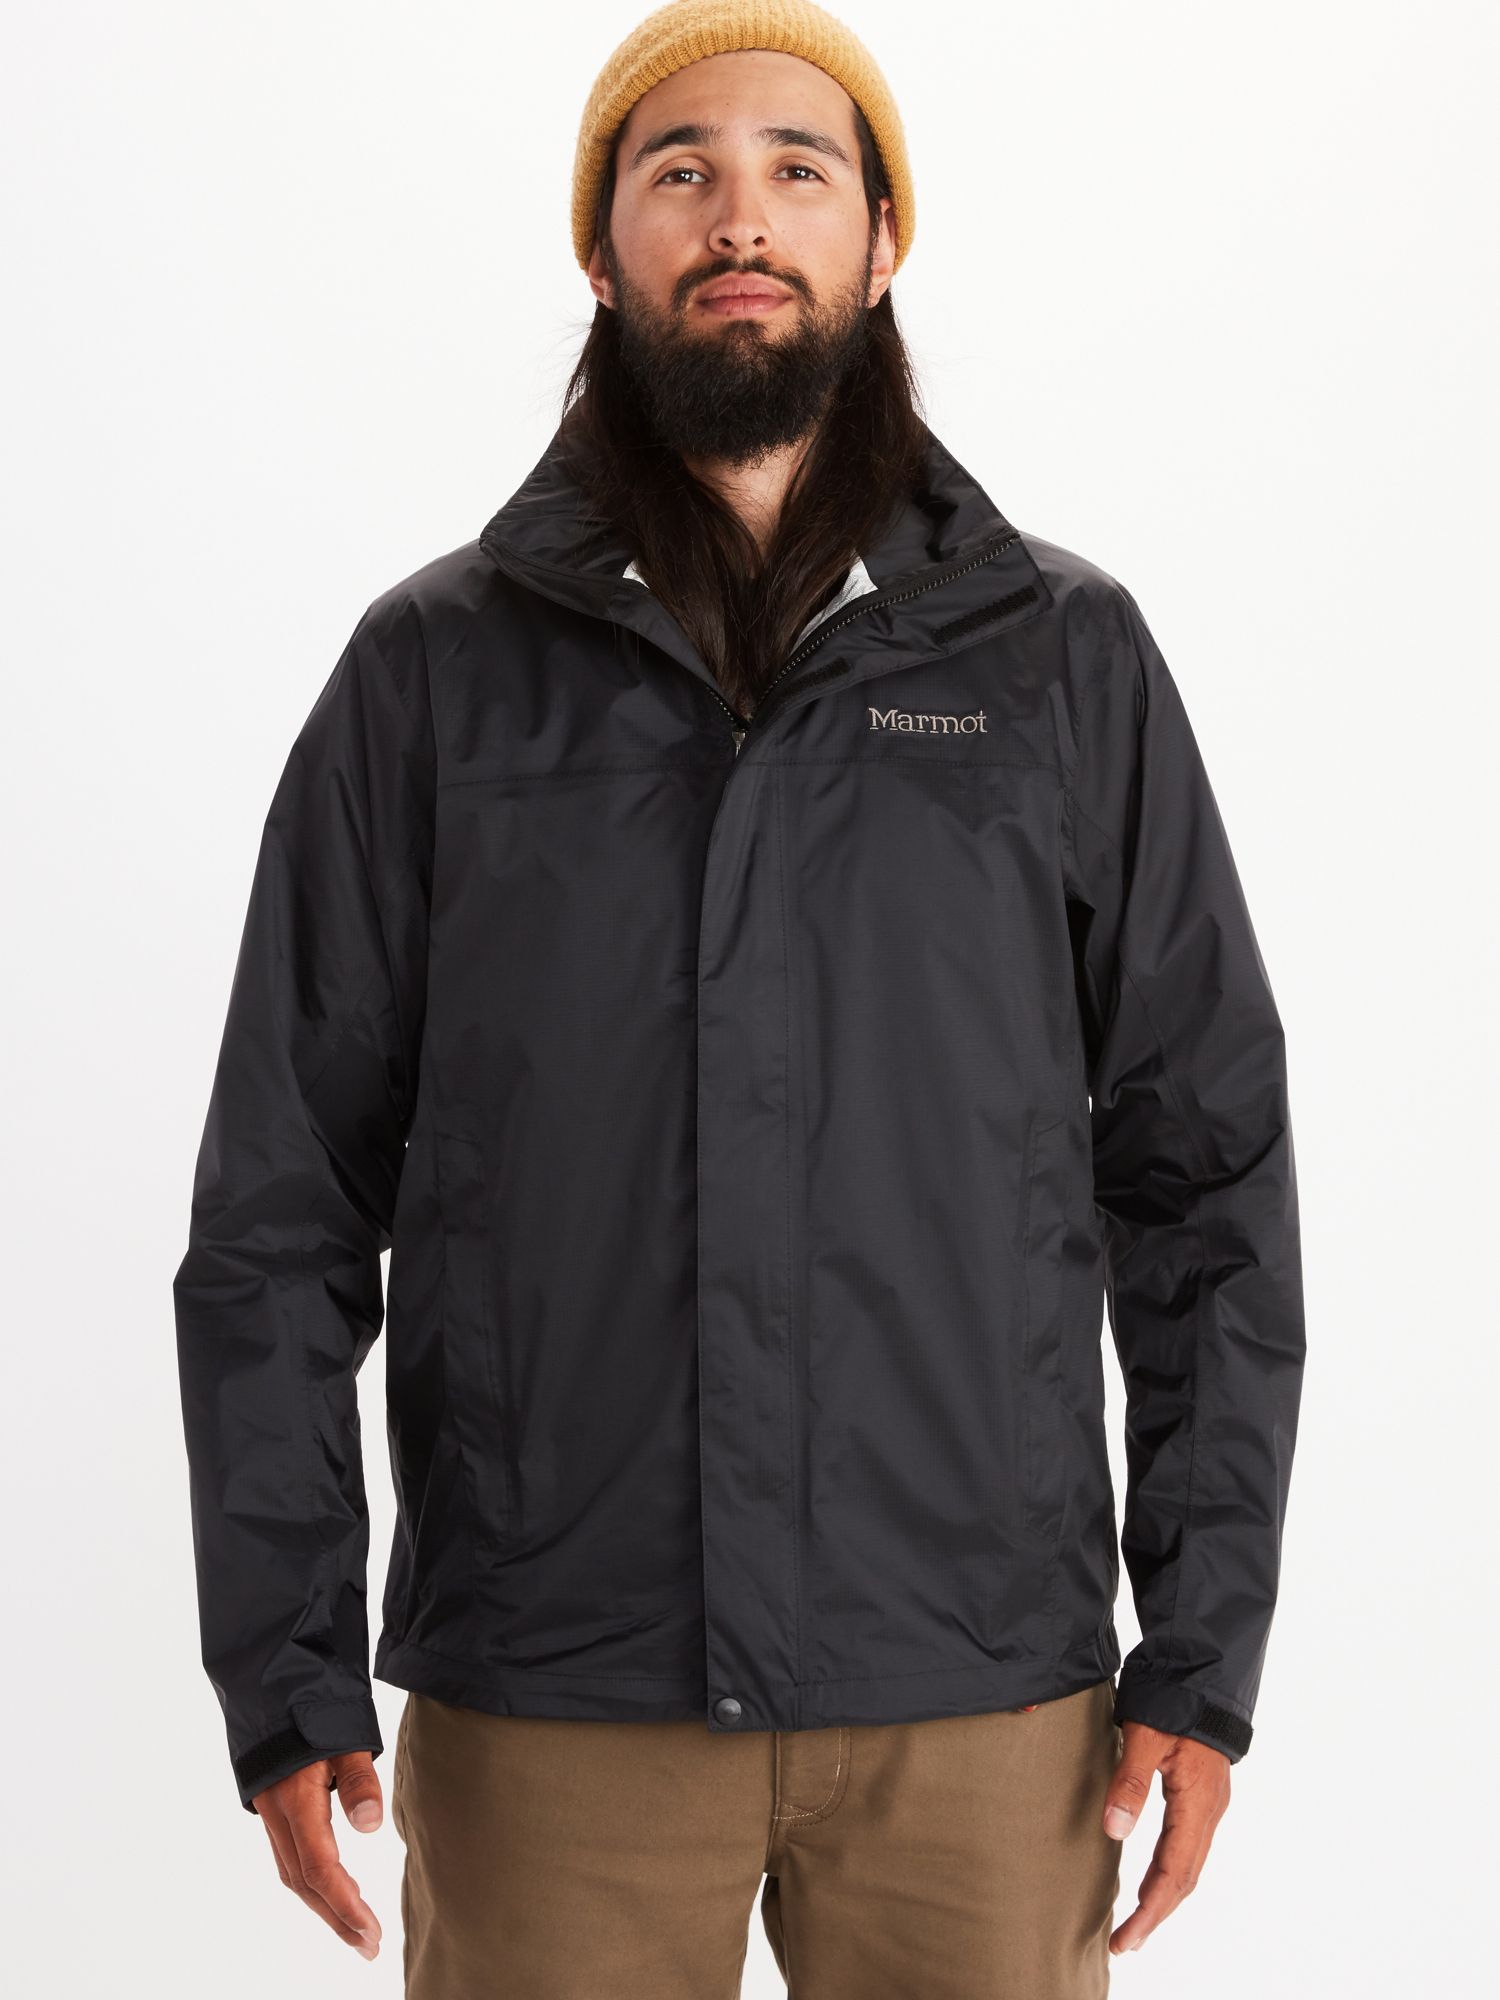 Men's Jackets & Vests for Rain, Shine, & Snow | Marmot